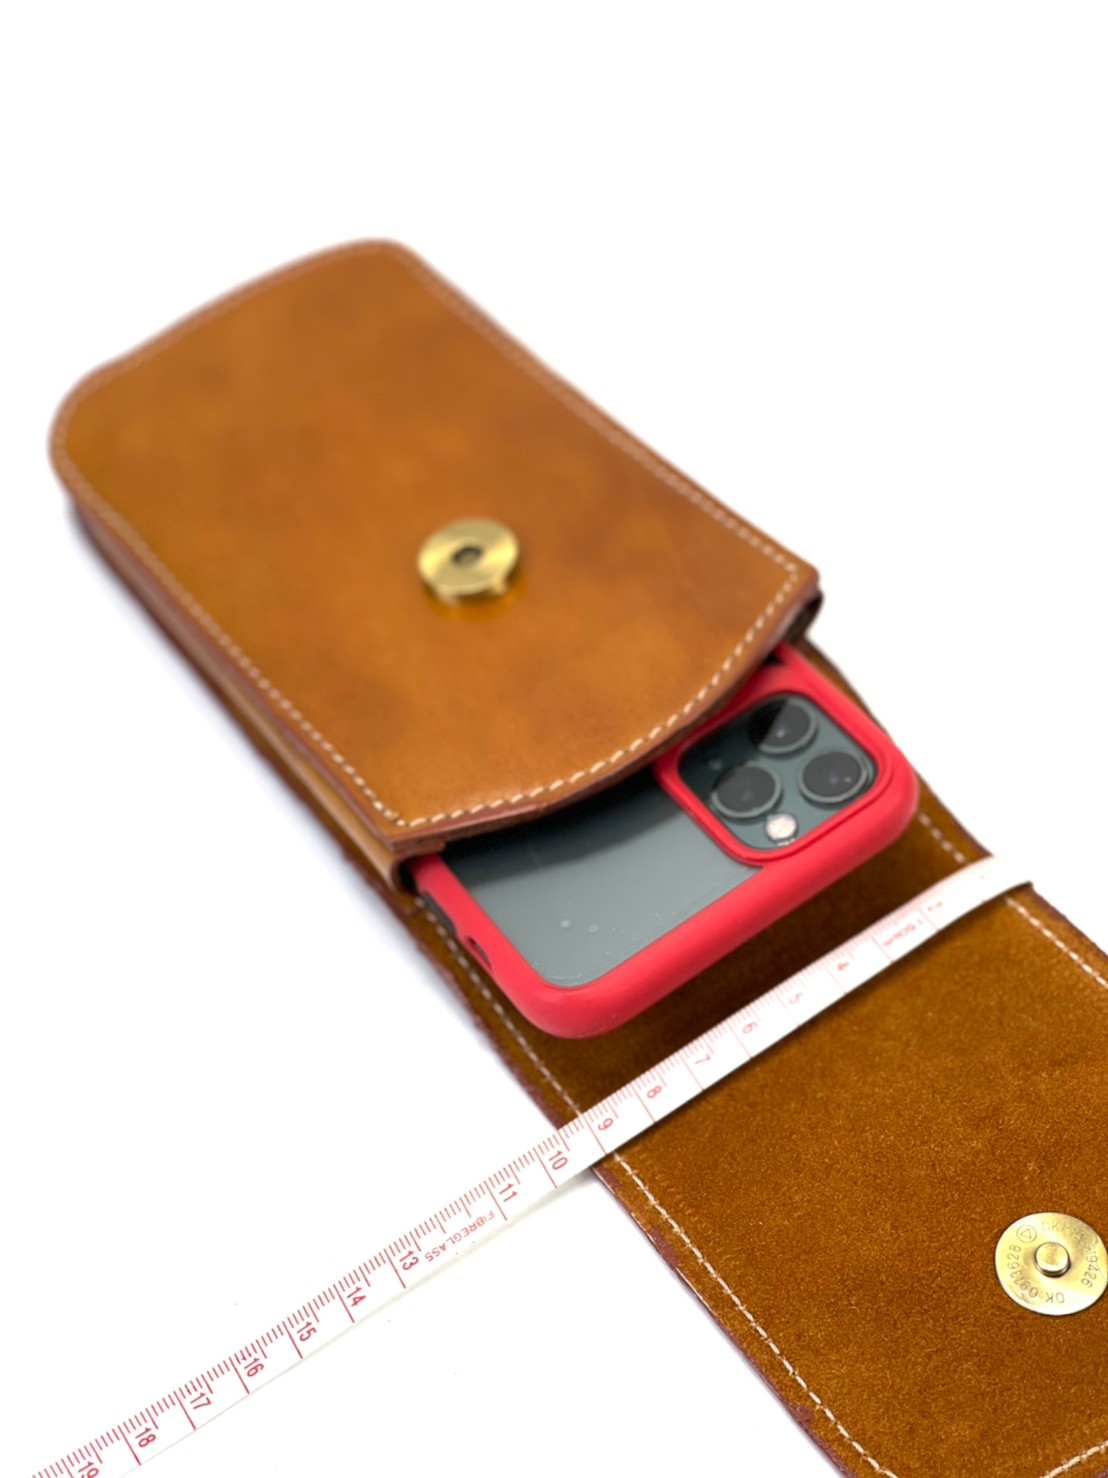 Chinatown Leather กระเป๋าหนังวัวแท้ร้อยเข็มขัดฝาแนวตั้ง 1 ชั้น สีน้ำตาลแทน น้ำตาลเข้ม ดำ ใส่มือถือ Iphone Pro max สี ดำ สี ดำรูปแบบรุ่นที่ีรองรับ Apple iPhone 6 Plus / 6s Plus